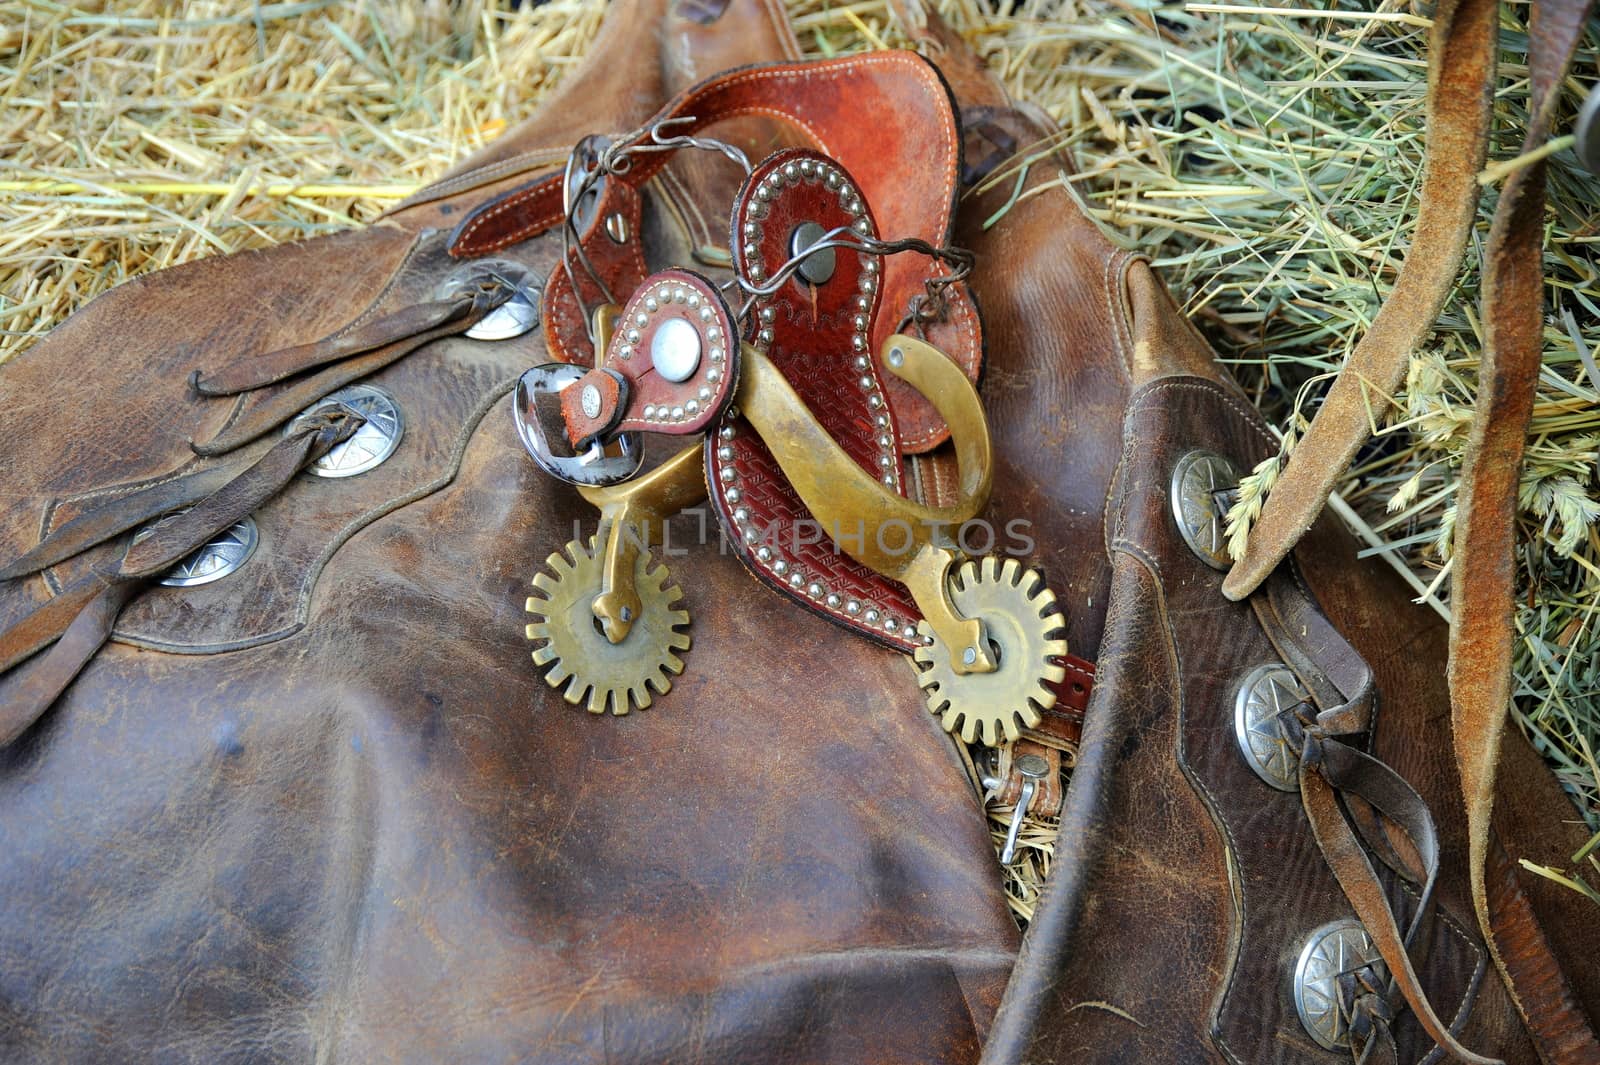 Western gear displayed inside a barn.